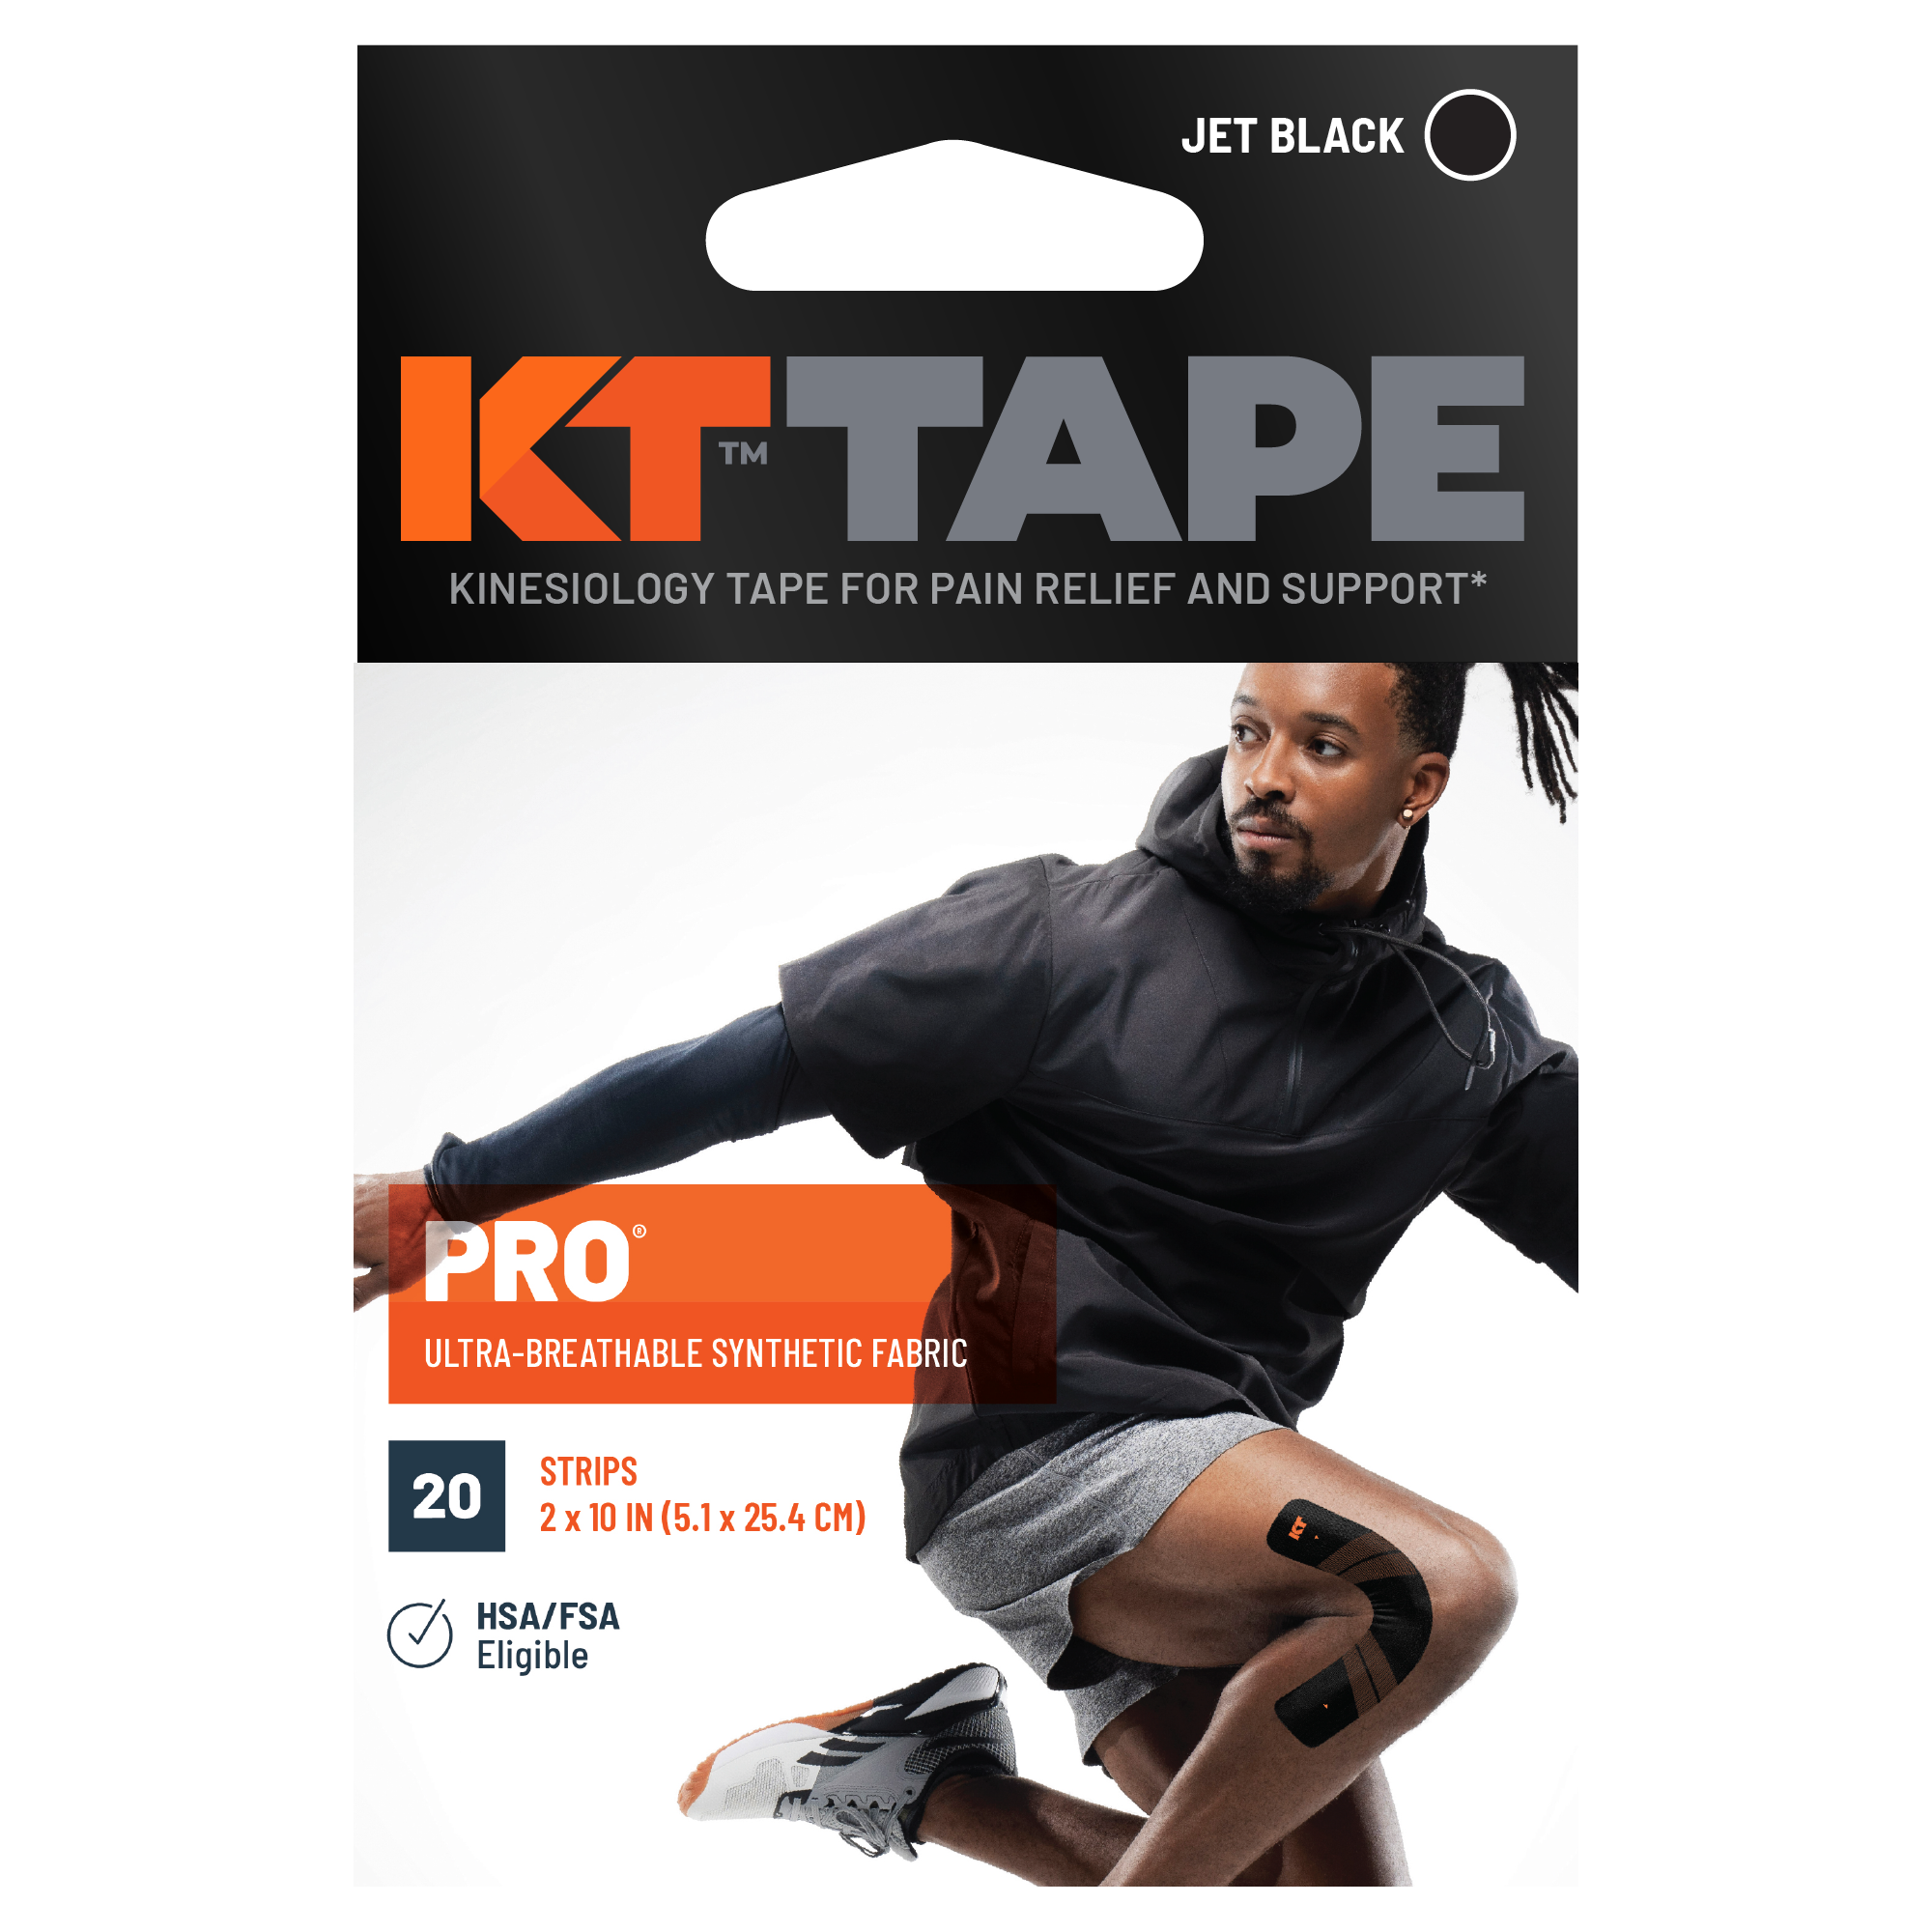 KT Tape Pro packaging#color_jet-black